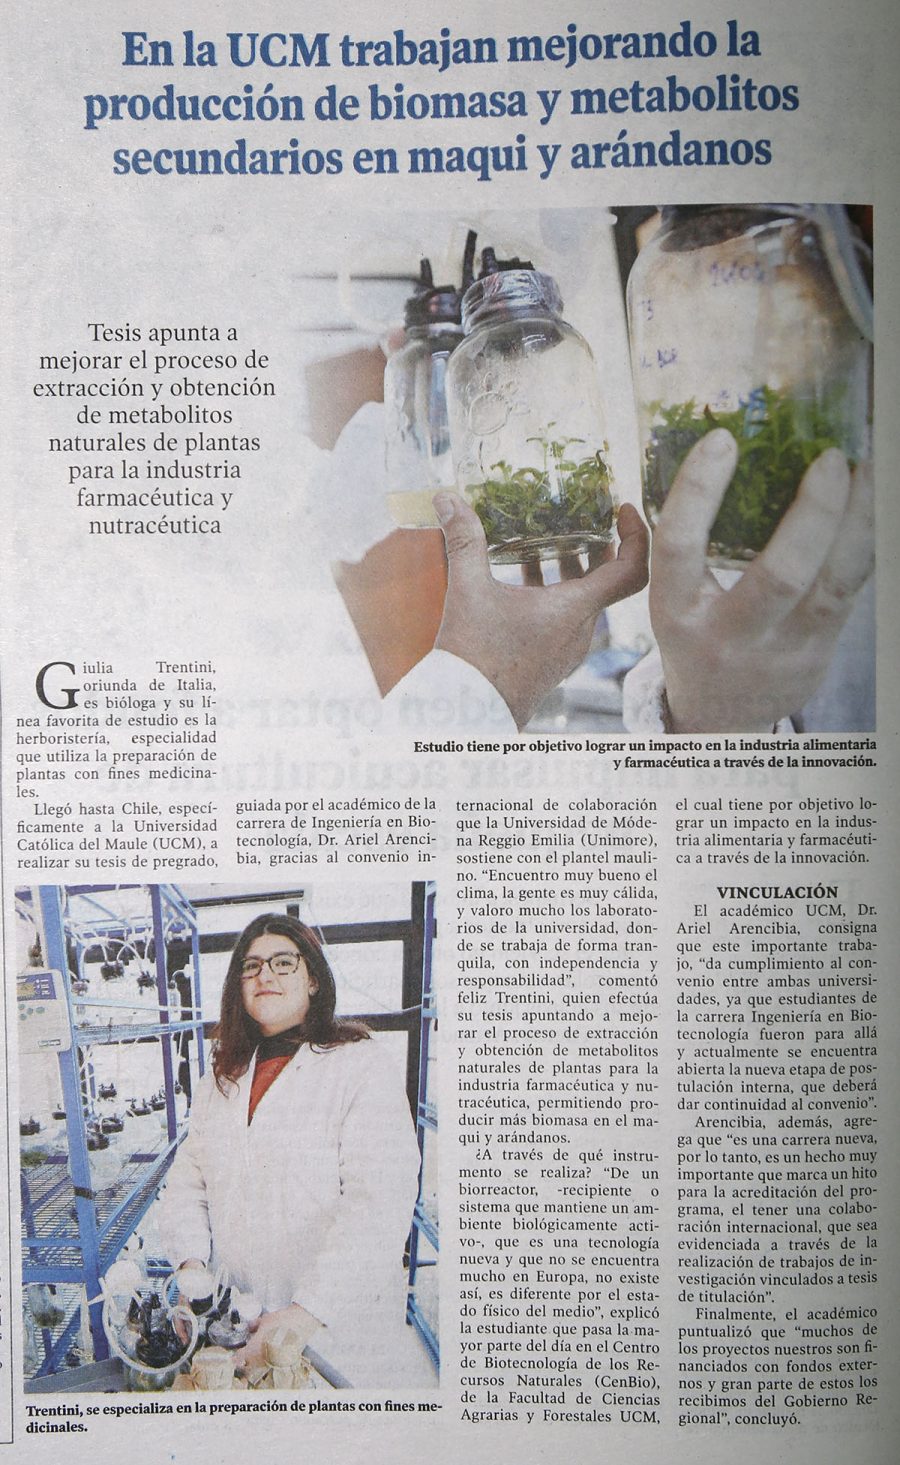 19 de junio en Diario El Centro: “En la UCM trabajan mejorando la producción de biomasa y metabolitos secundarios en maqui y arándanos”